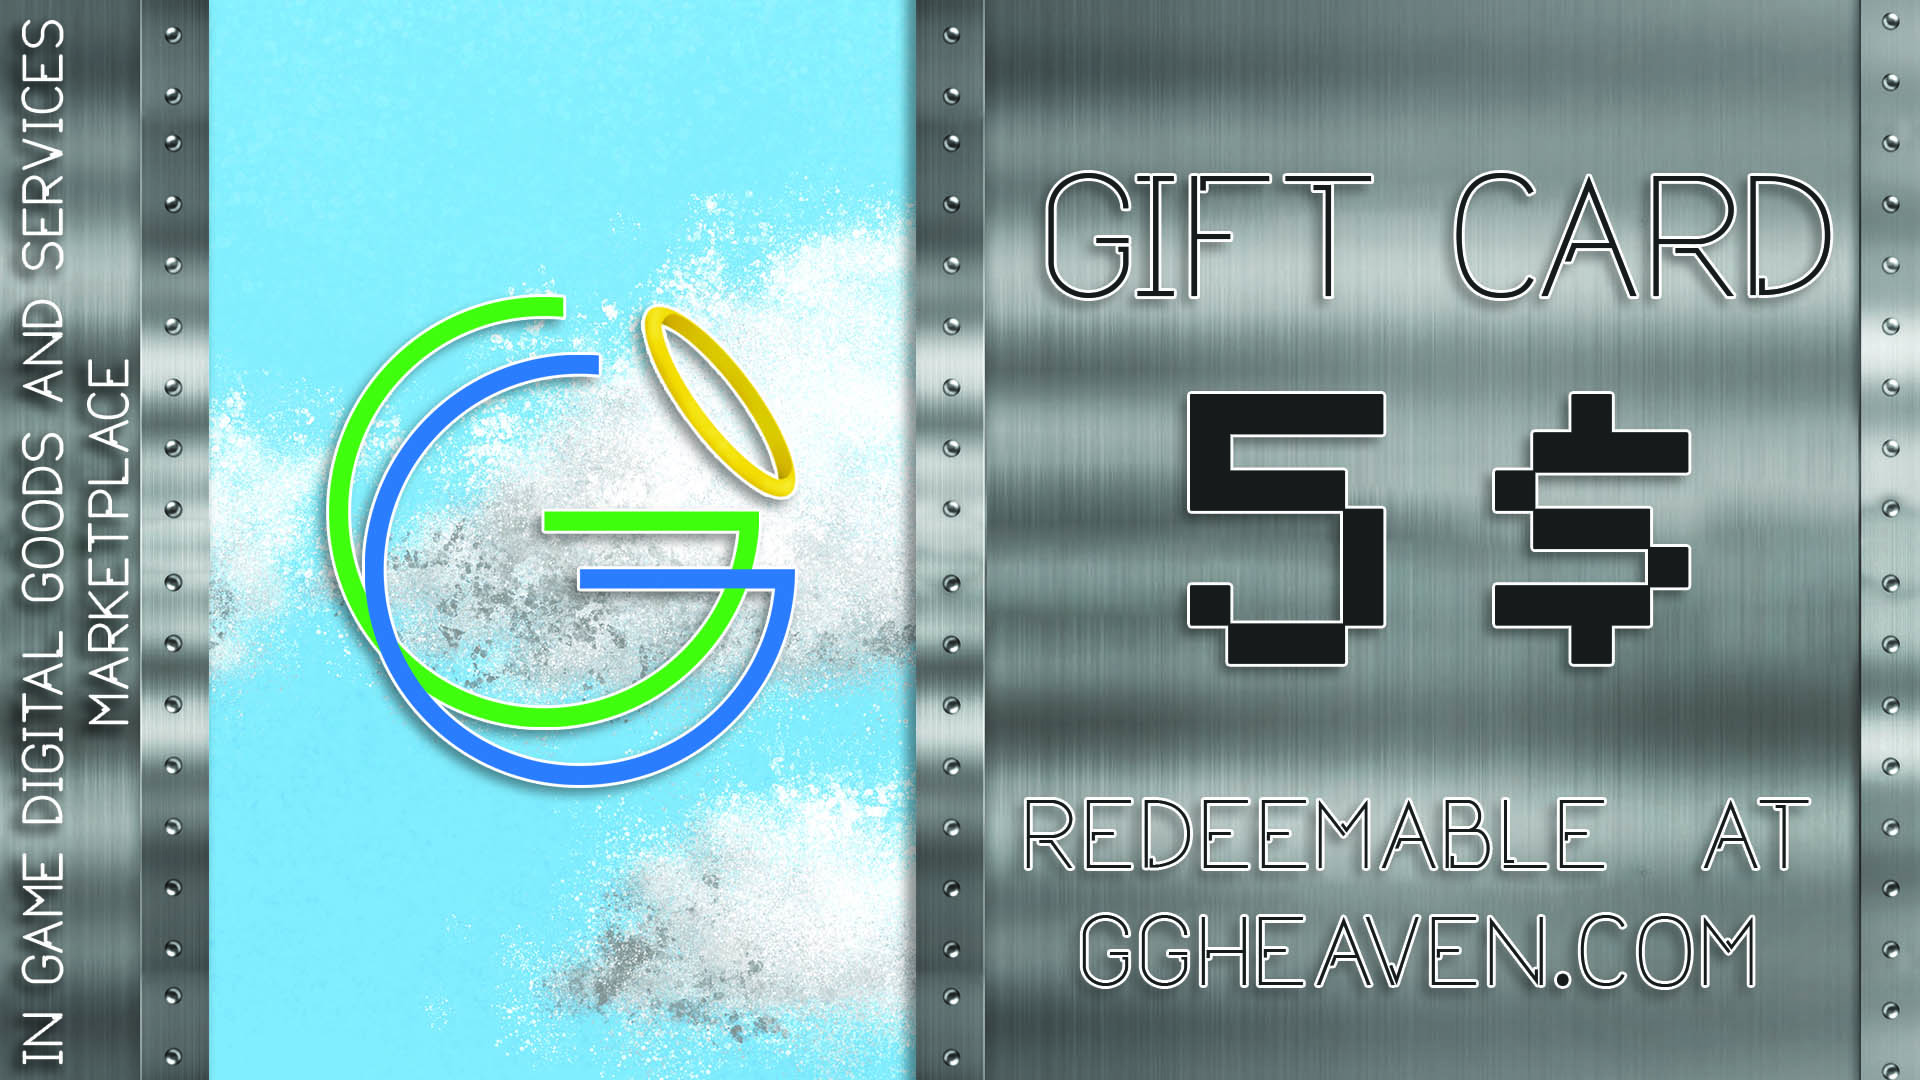 [$ 6.27] GGHeaven.com 5$ Gift Card